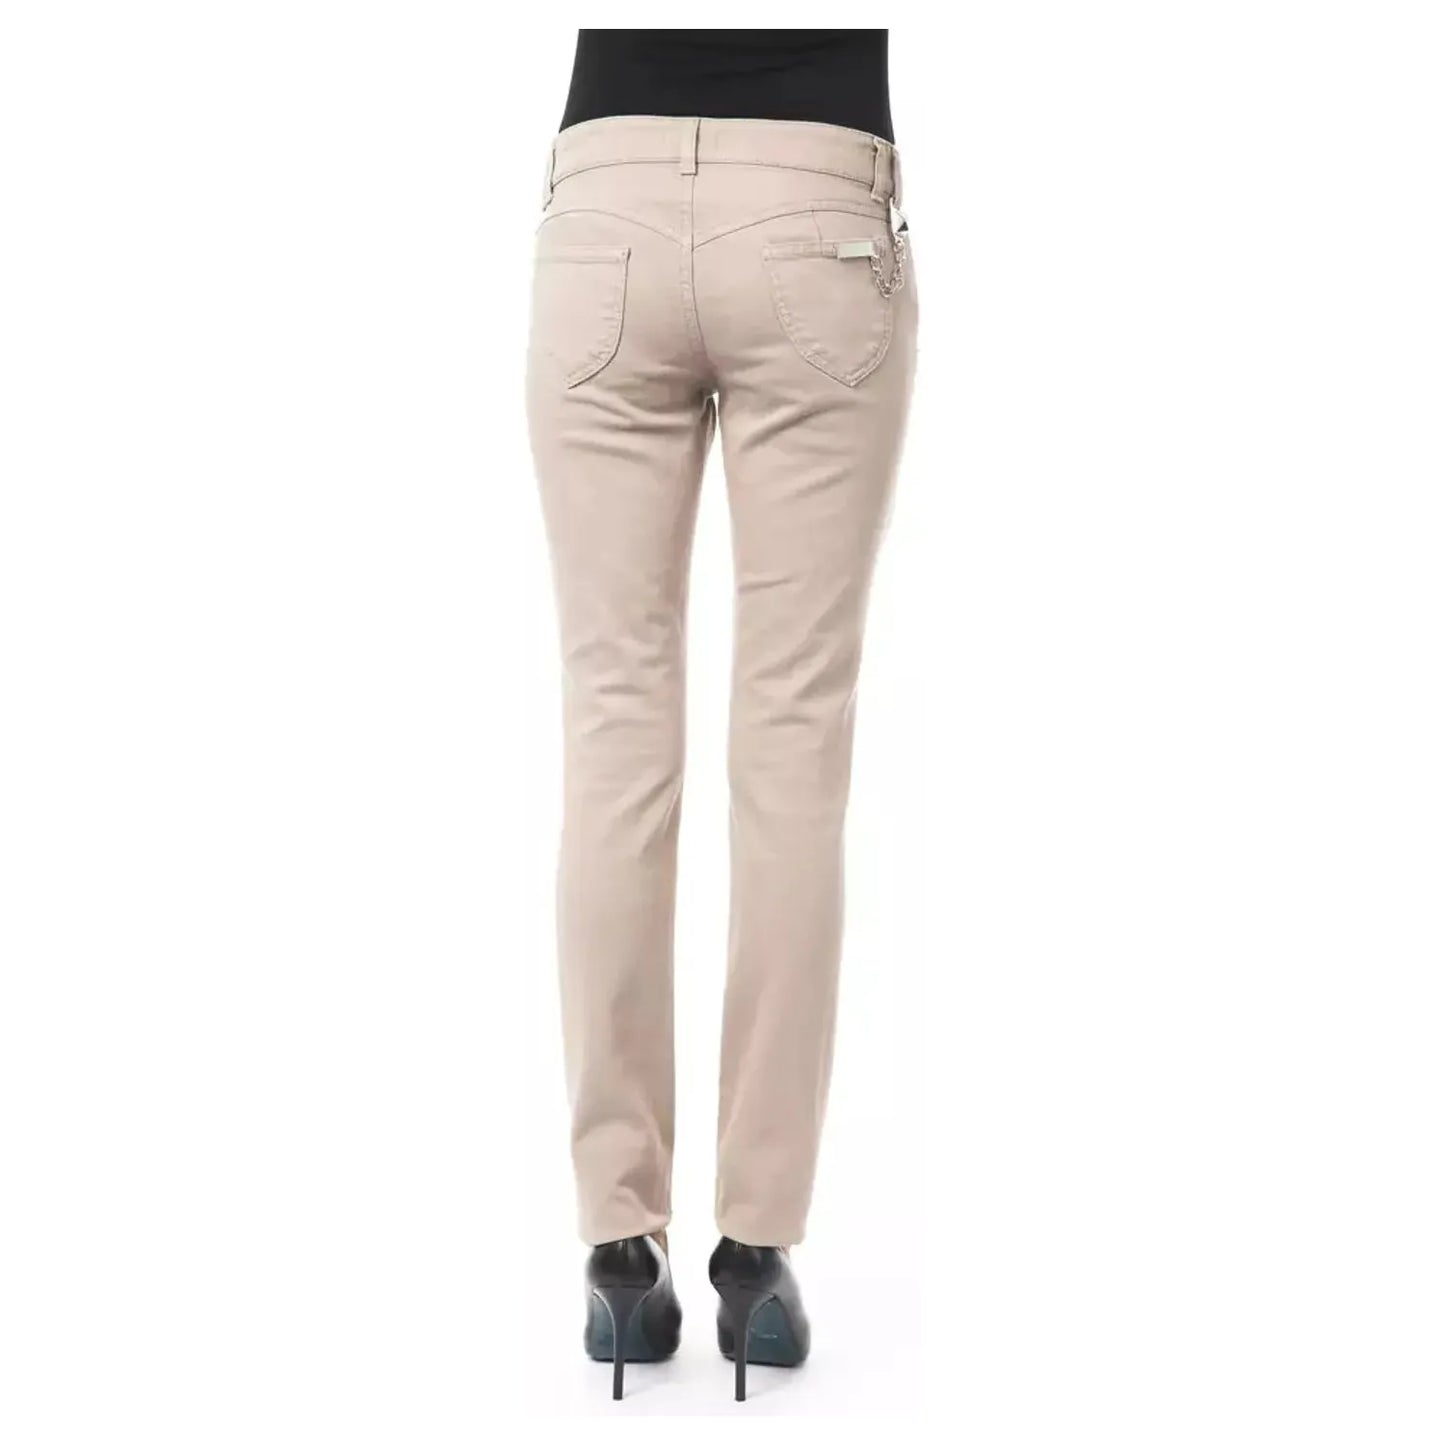 BYBLOS Elegant Beige Slim Fit Pants with Unique Chain Detail beige-cotton-jeans-pant-19 stock_product_image_17634_73780916-16-57182eb7-c44.webp